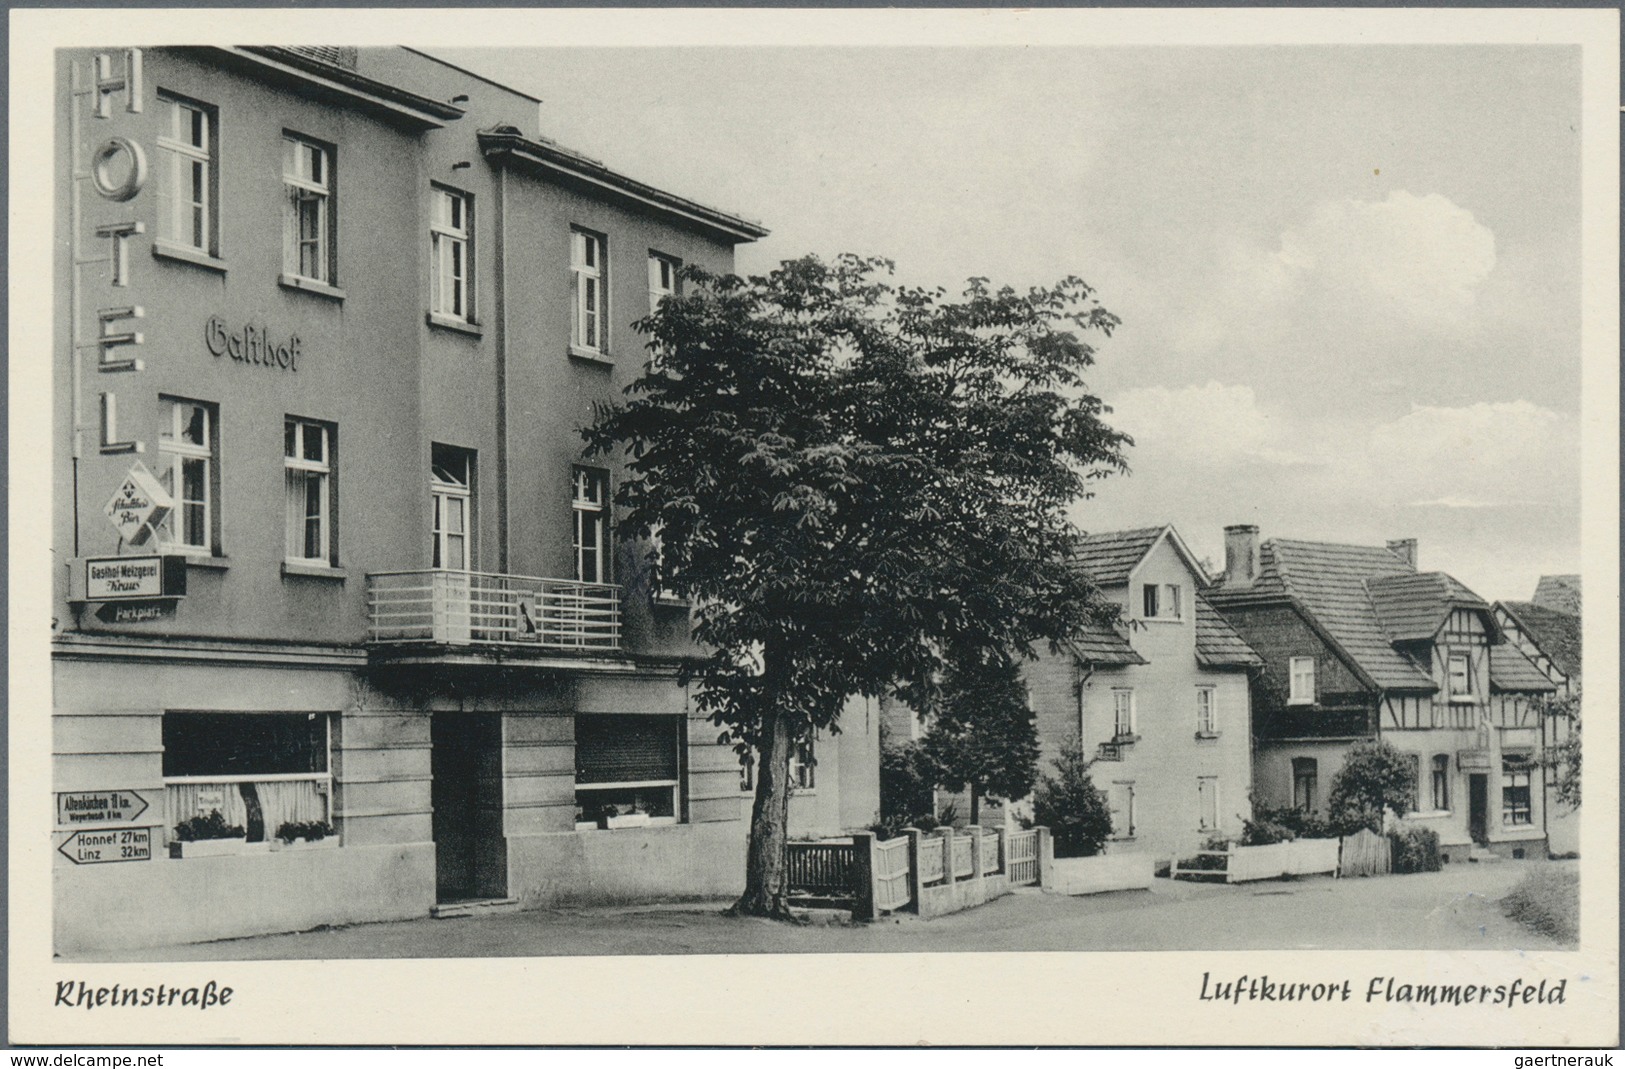 Ansichtskarten: KARTON, Mit Gut 1250 Historischen Ansichtskarten Ab Ca. 1900 Bis In Die 1970er Jahre - 500 Karten Min.